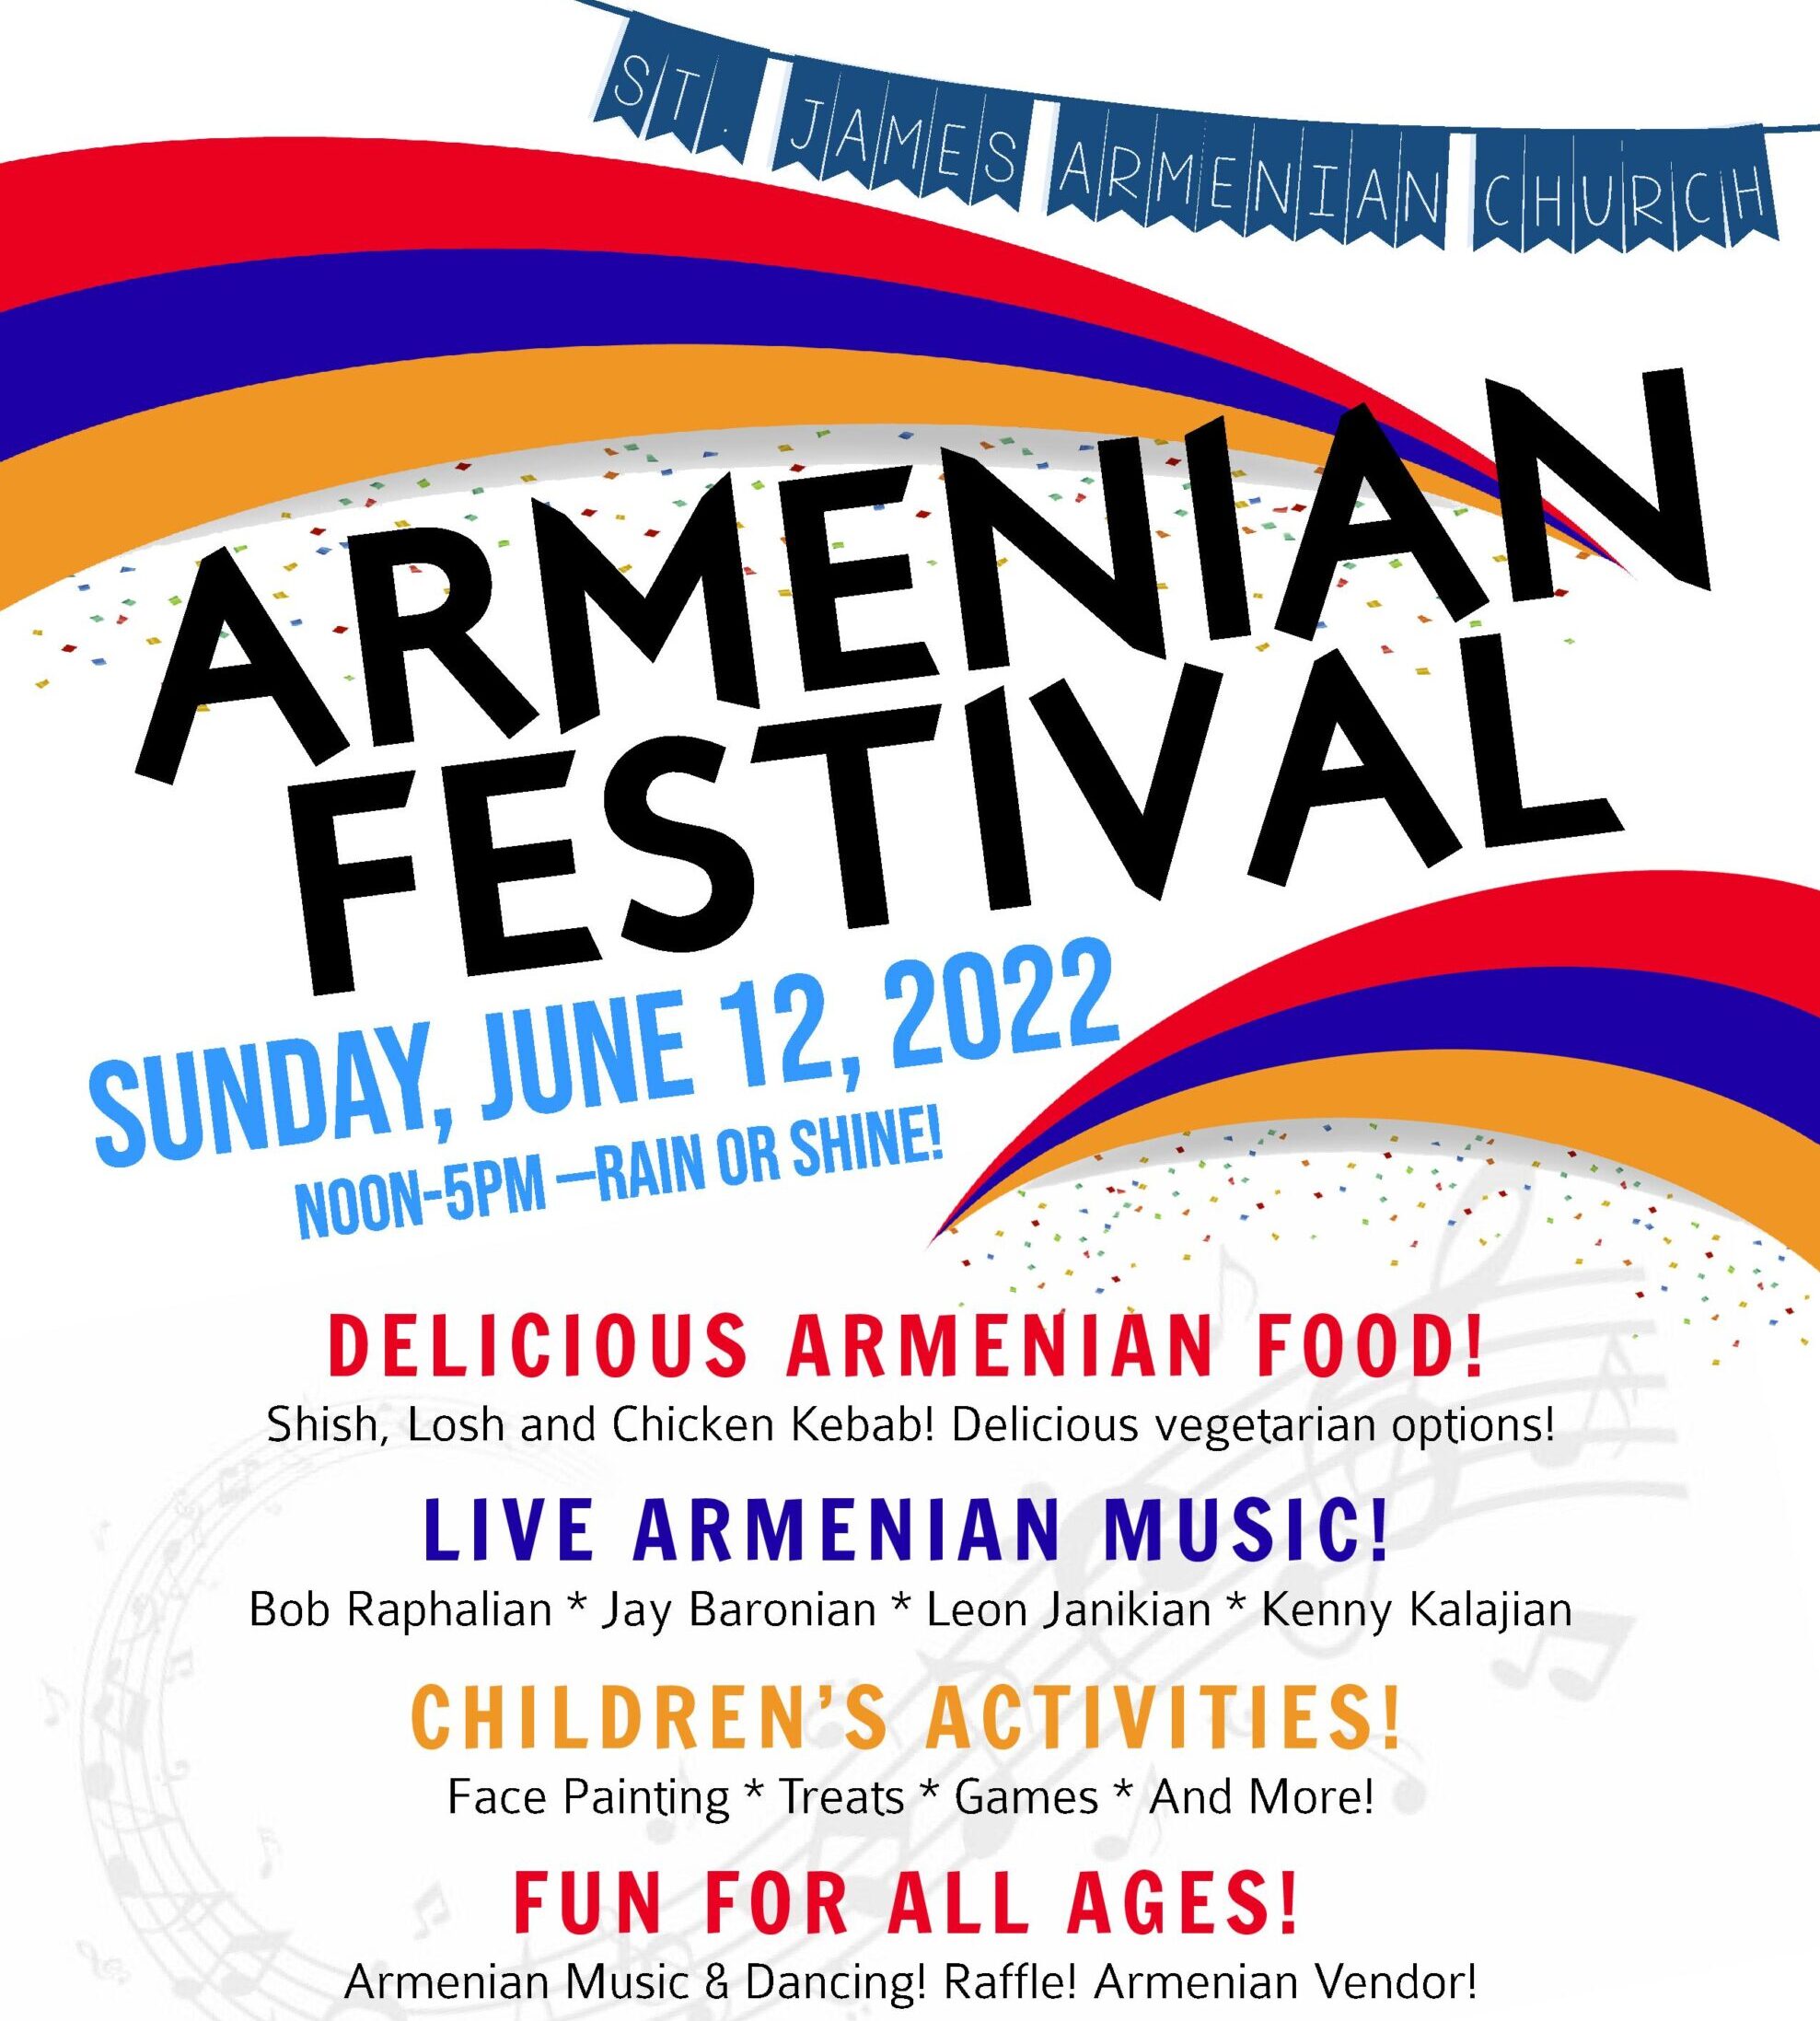 Armenian Festival St. James Armenian Church